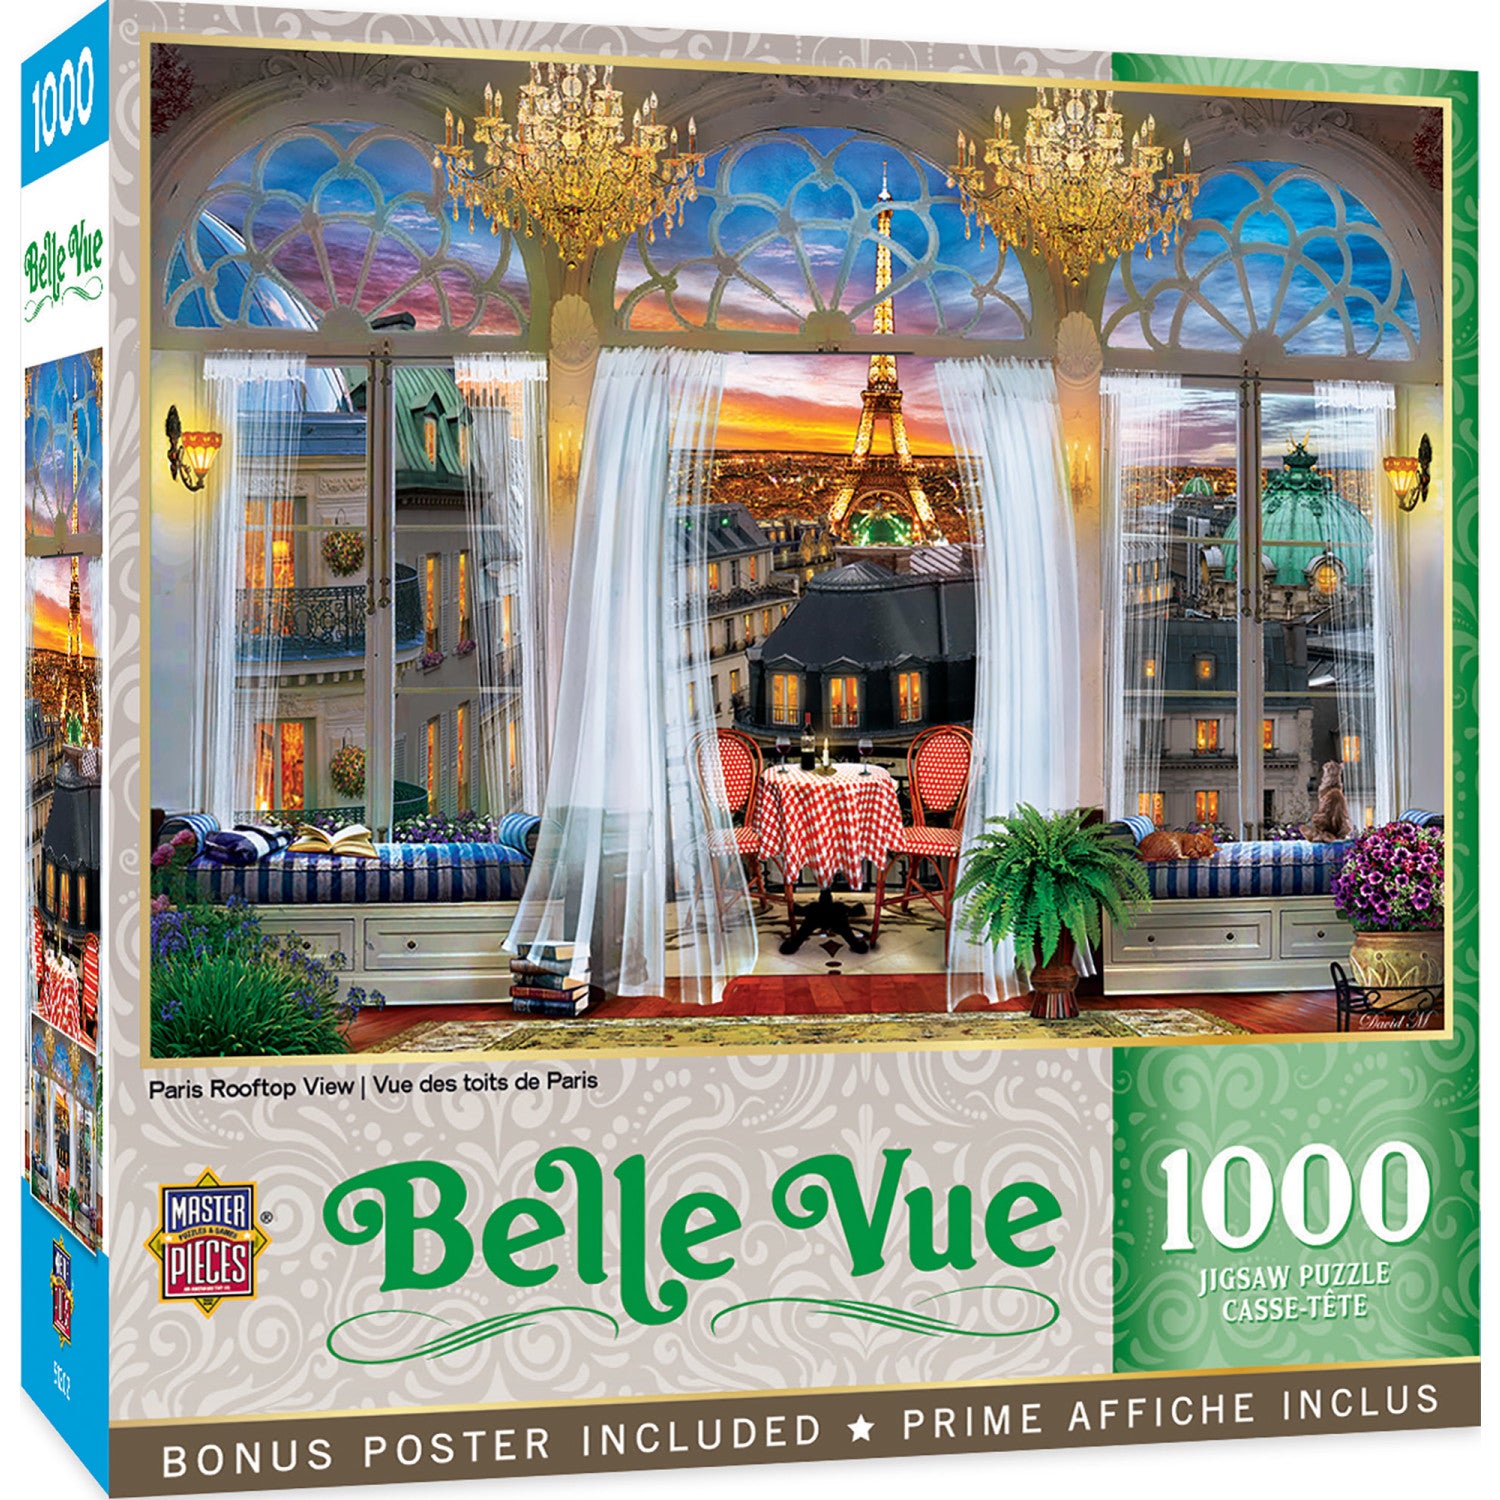 Belle Vue - Paris Rooftop View 1000 Piece Puzzle